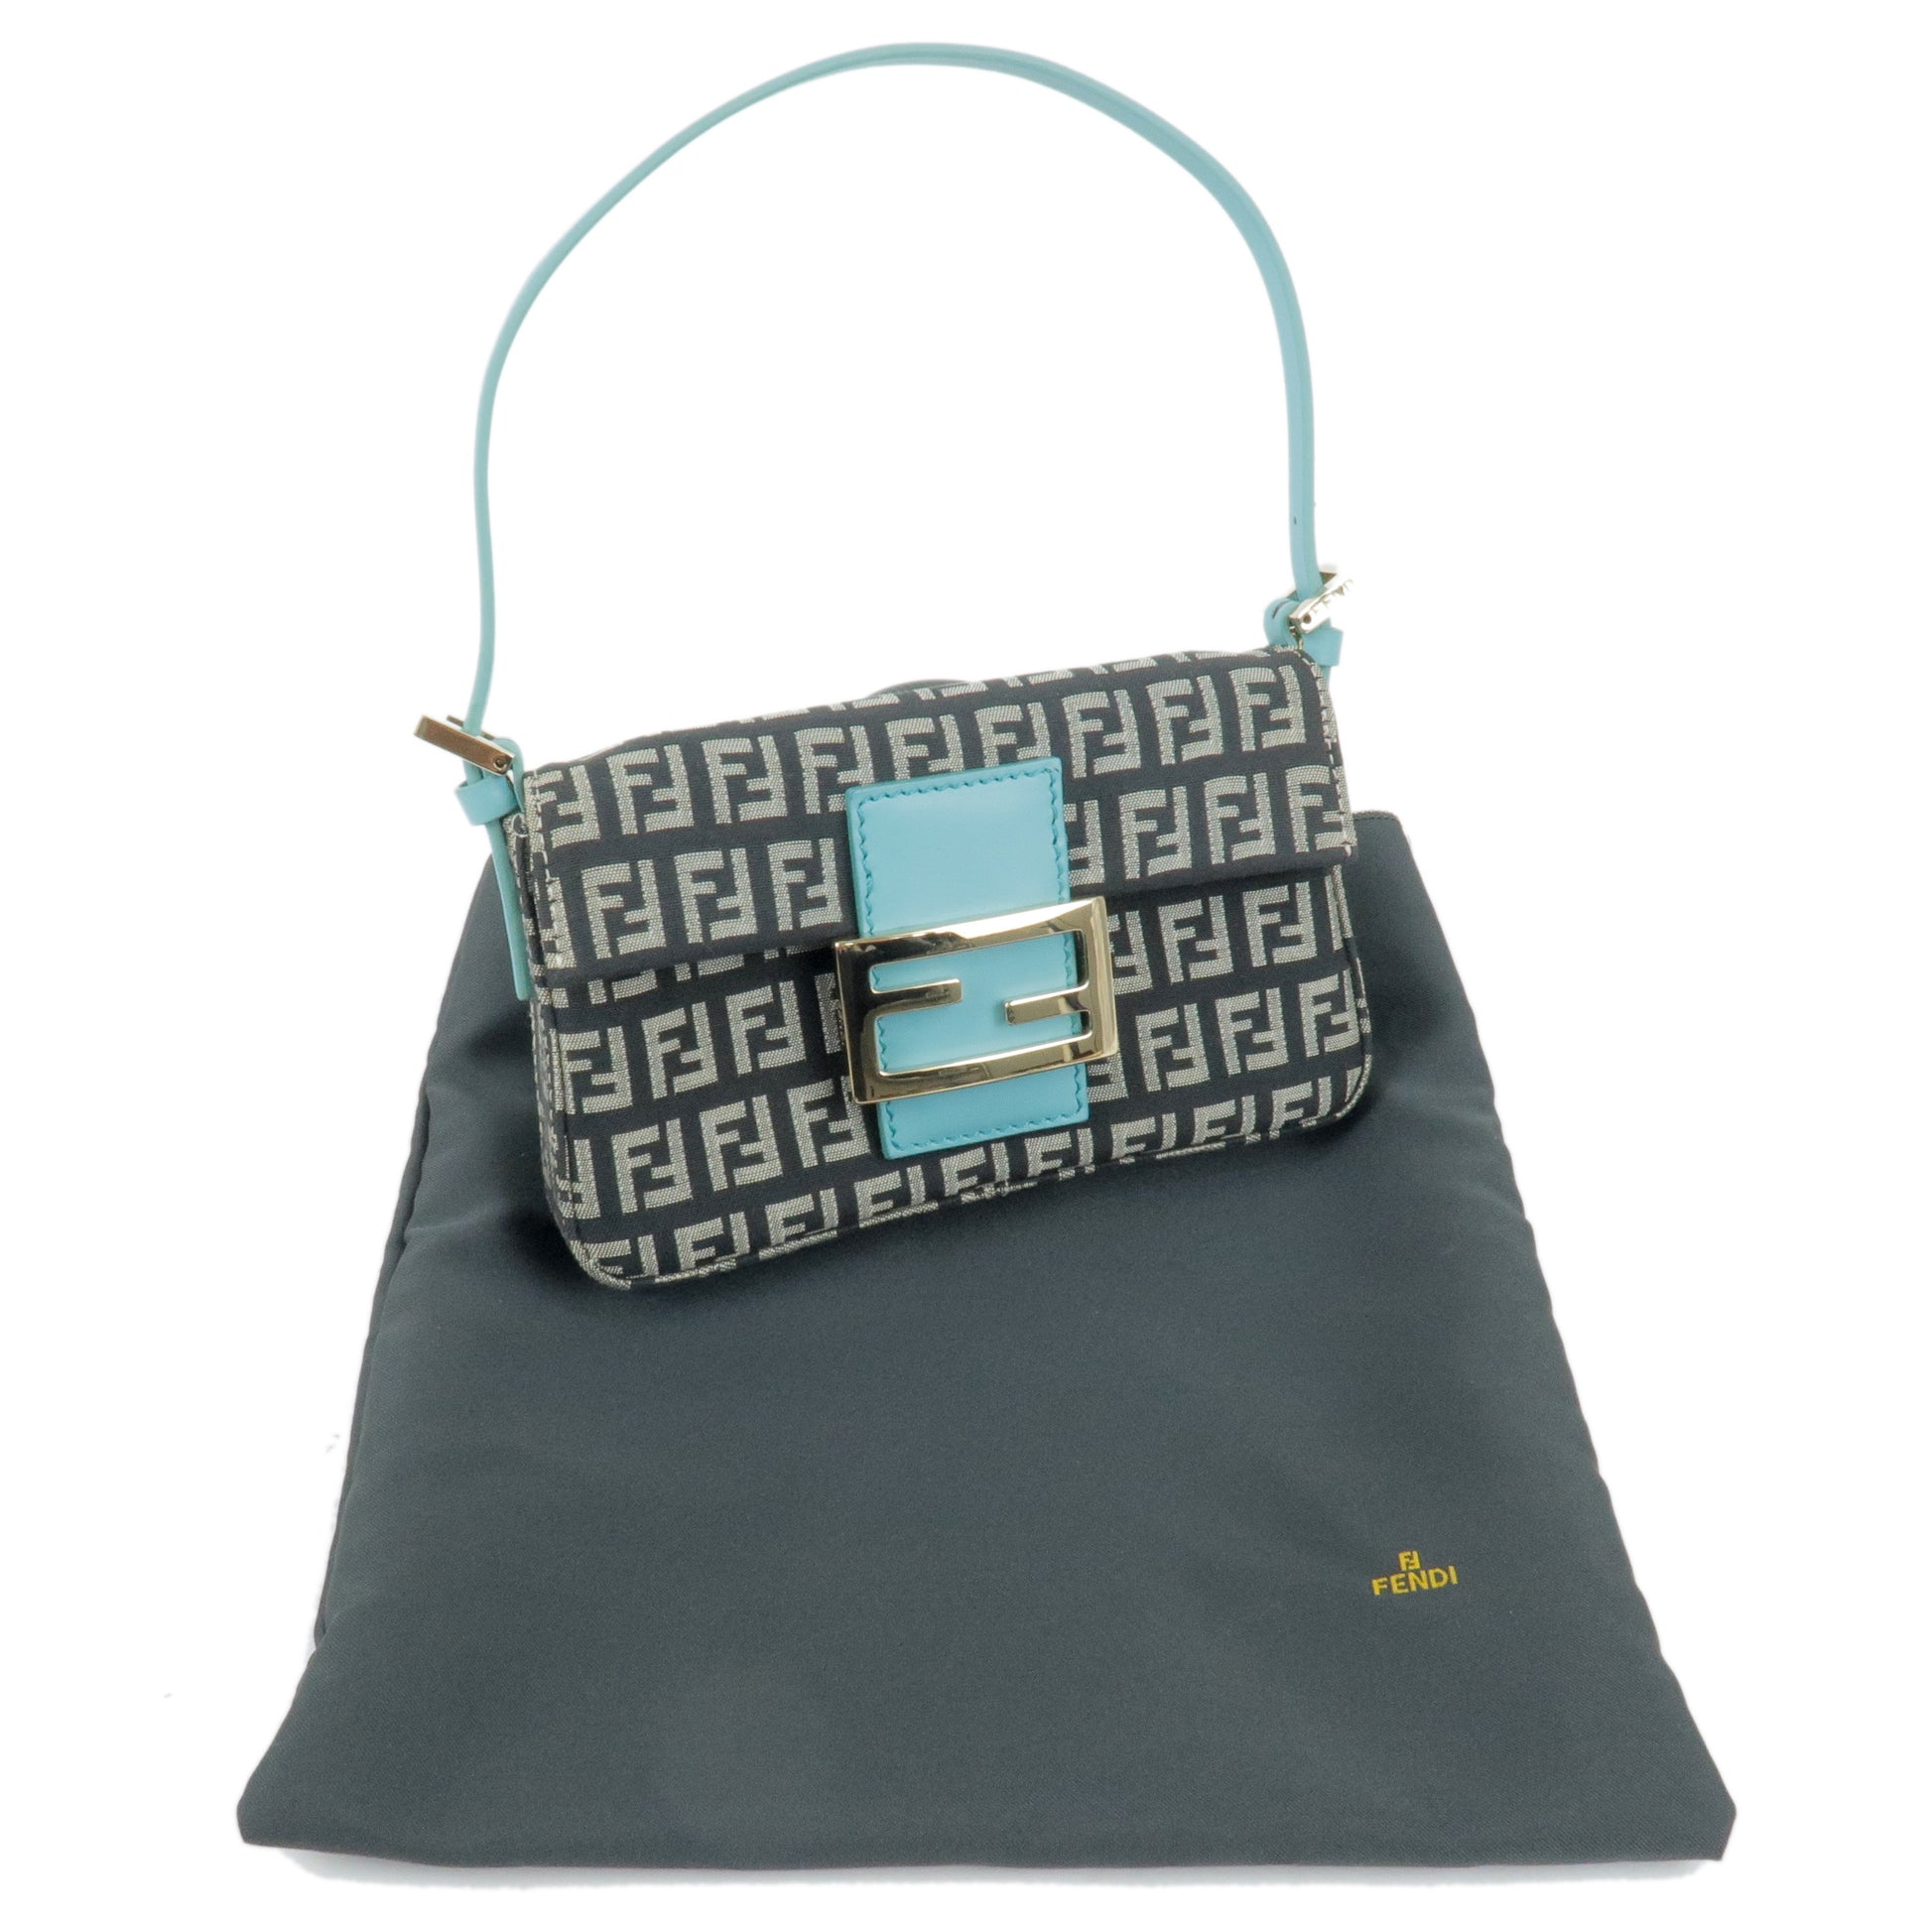 Fendi Women's Bag Black Zucchino Mini Pochette Handbag Purse Logo